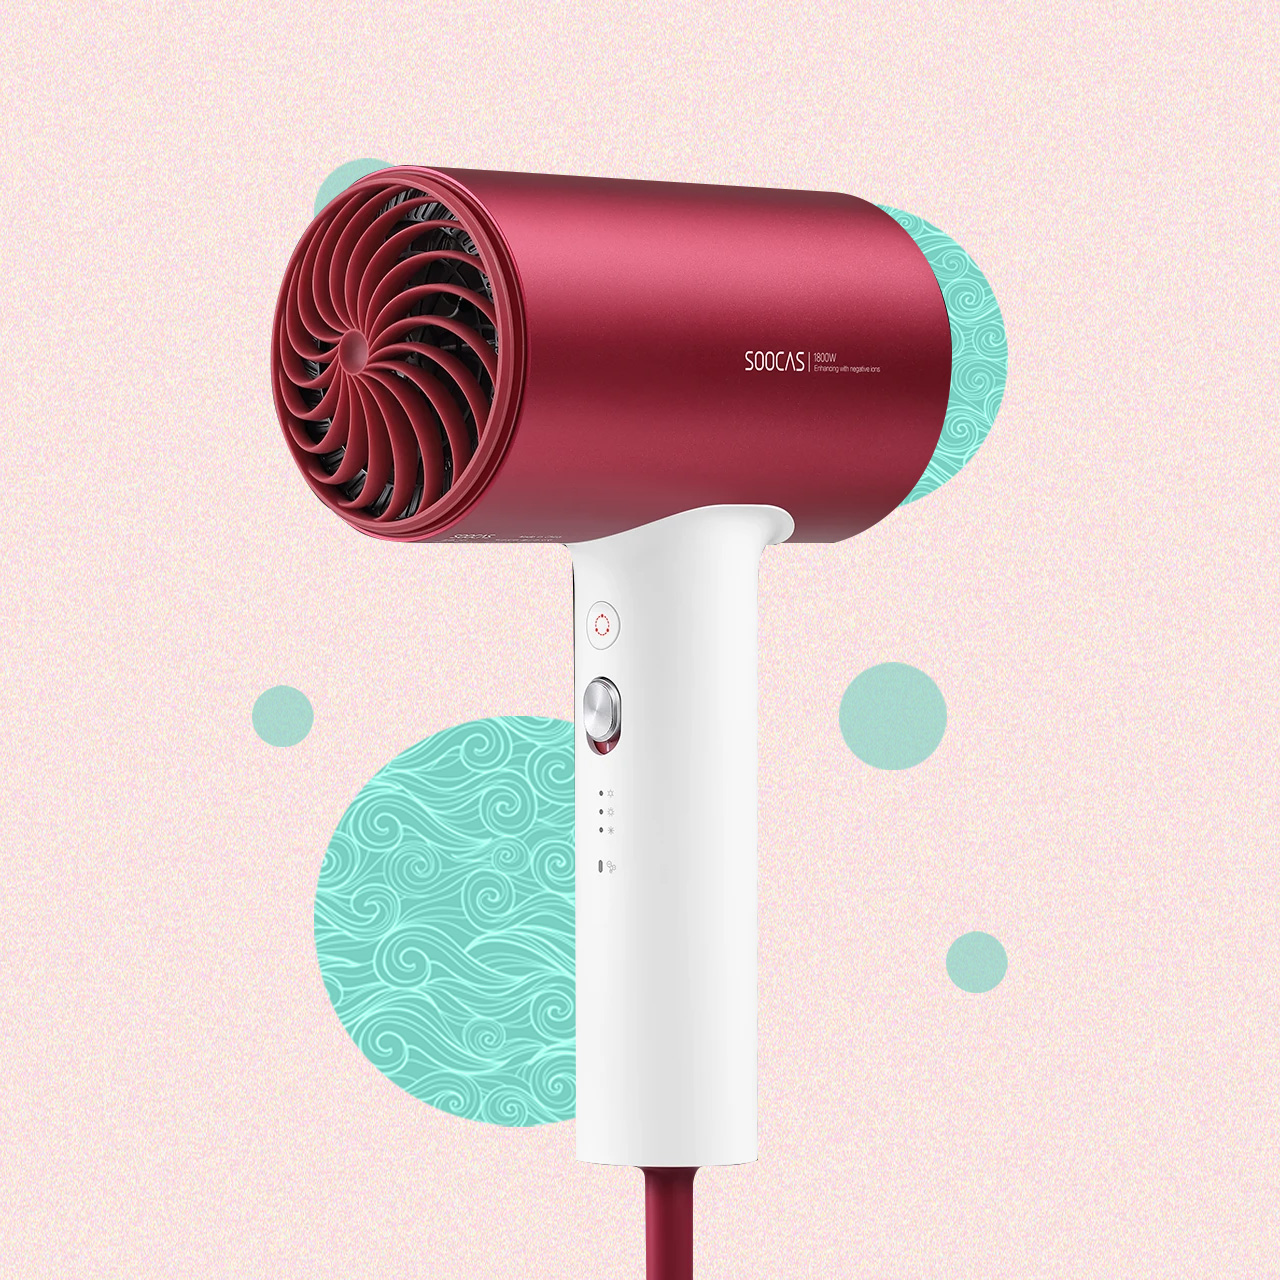 5 affordable handy, stylish hair dryers (2021 edition) - GadgetMatch